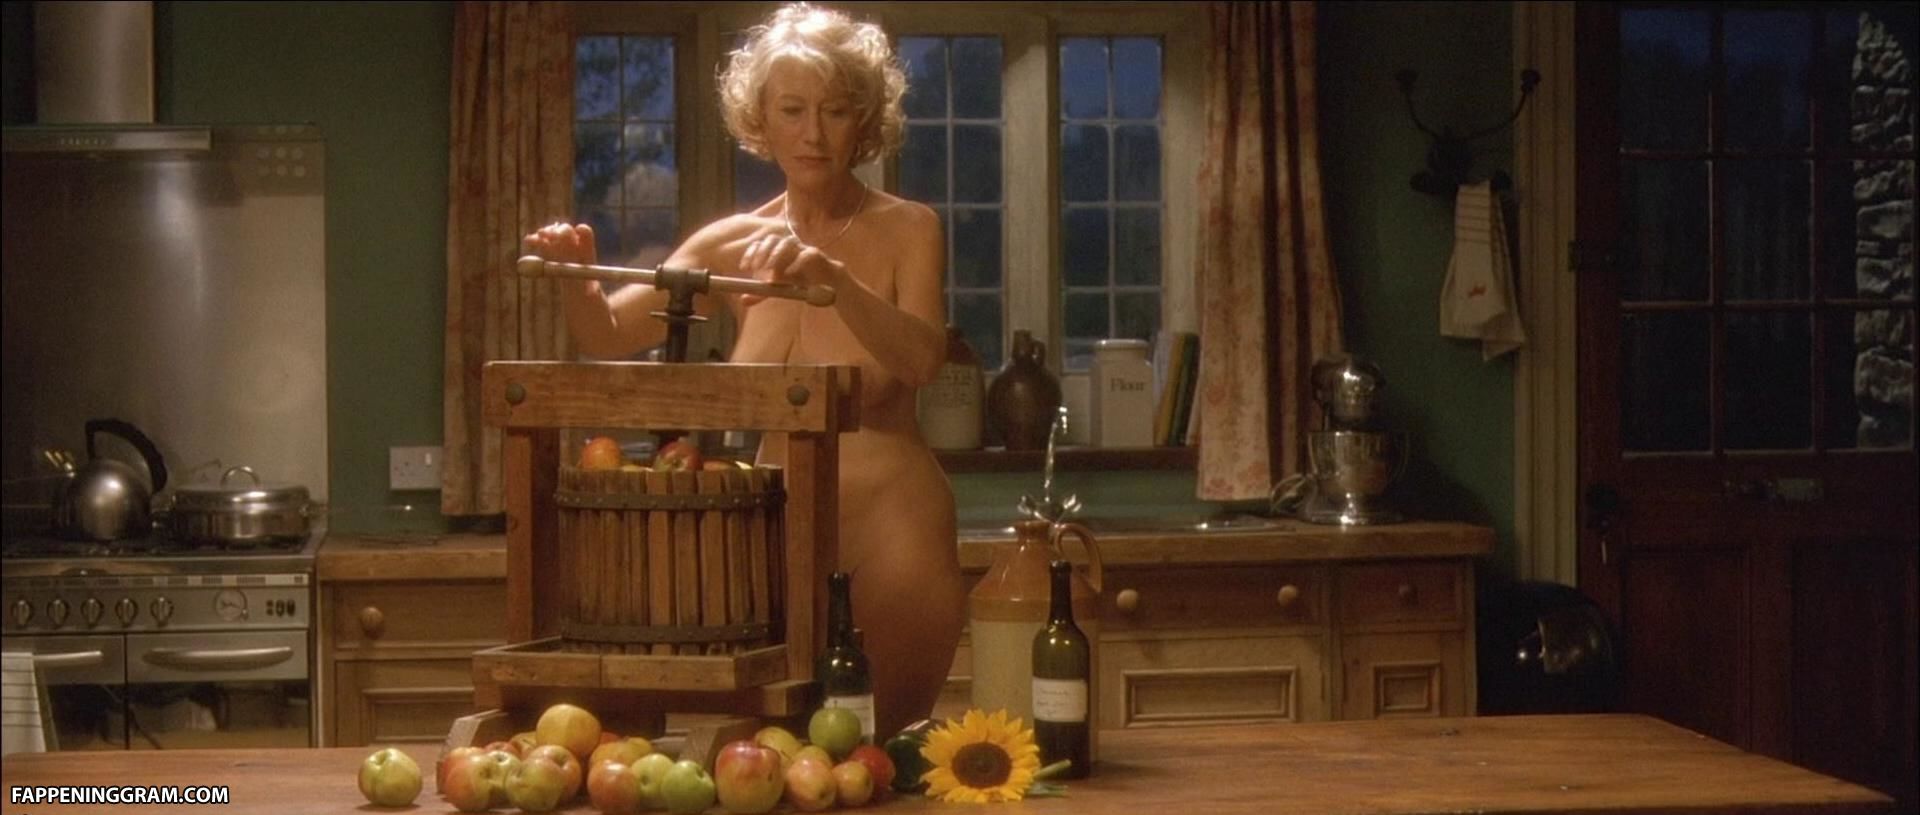 Helen Mirren Nude.